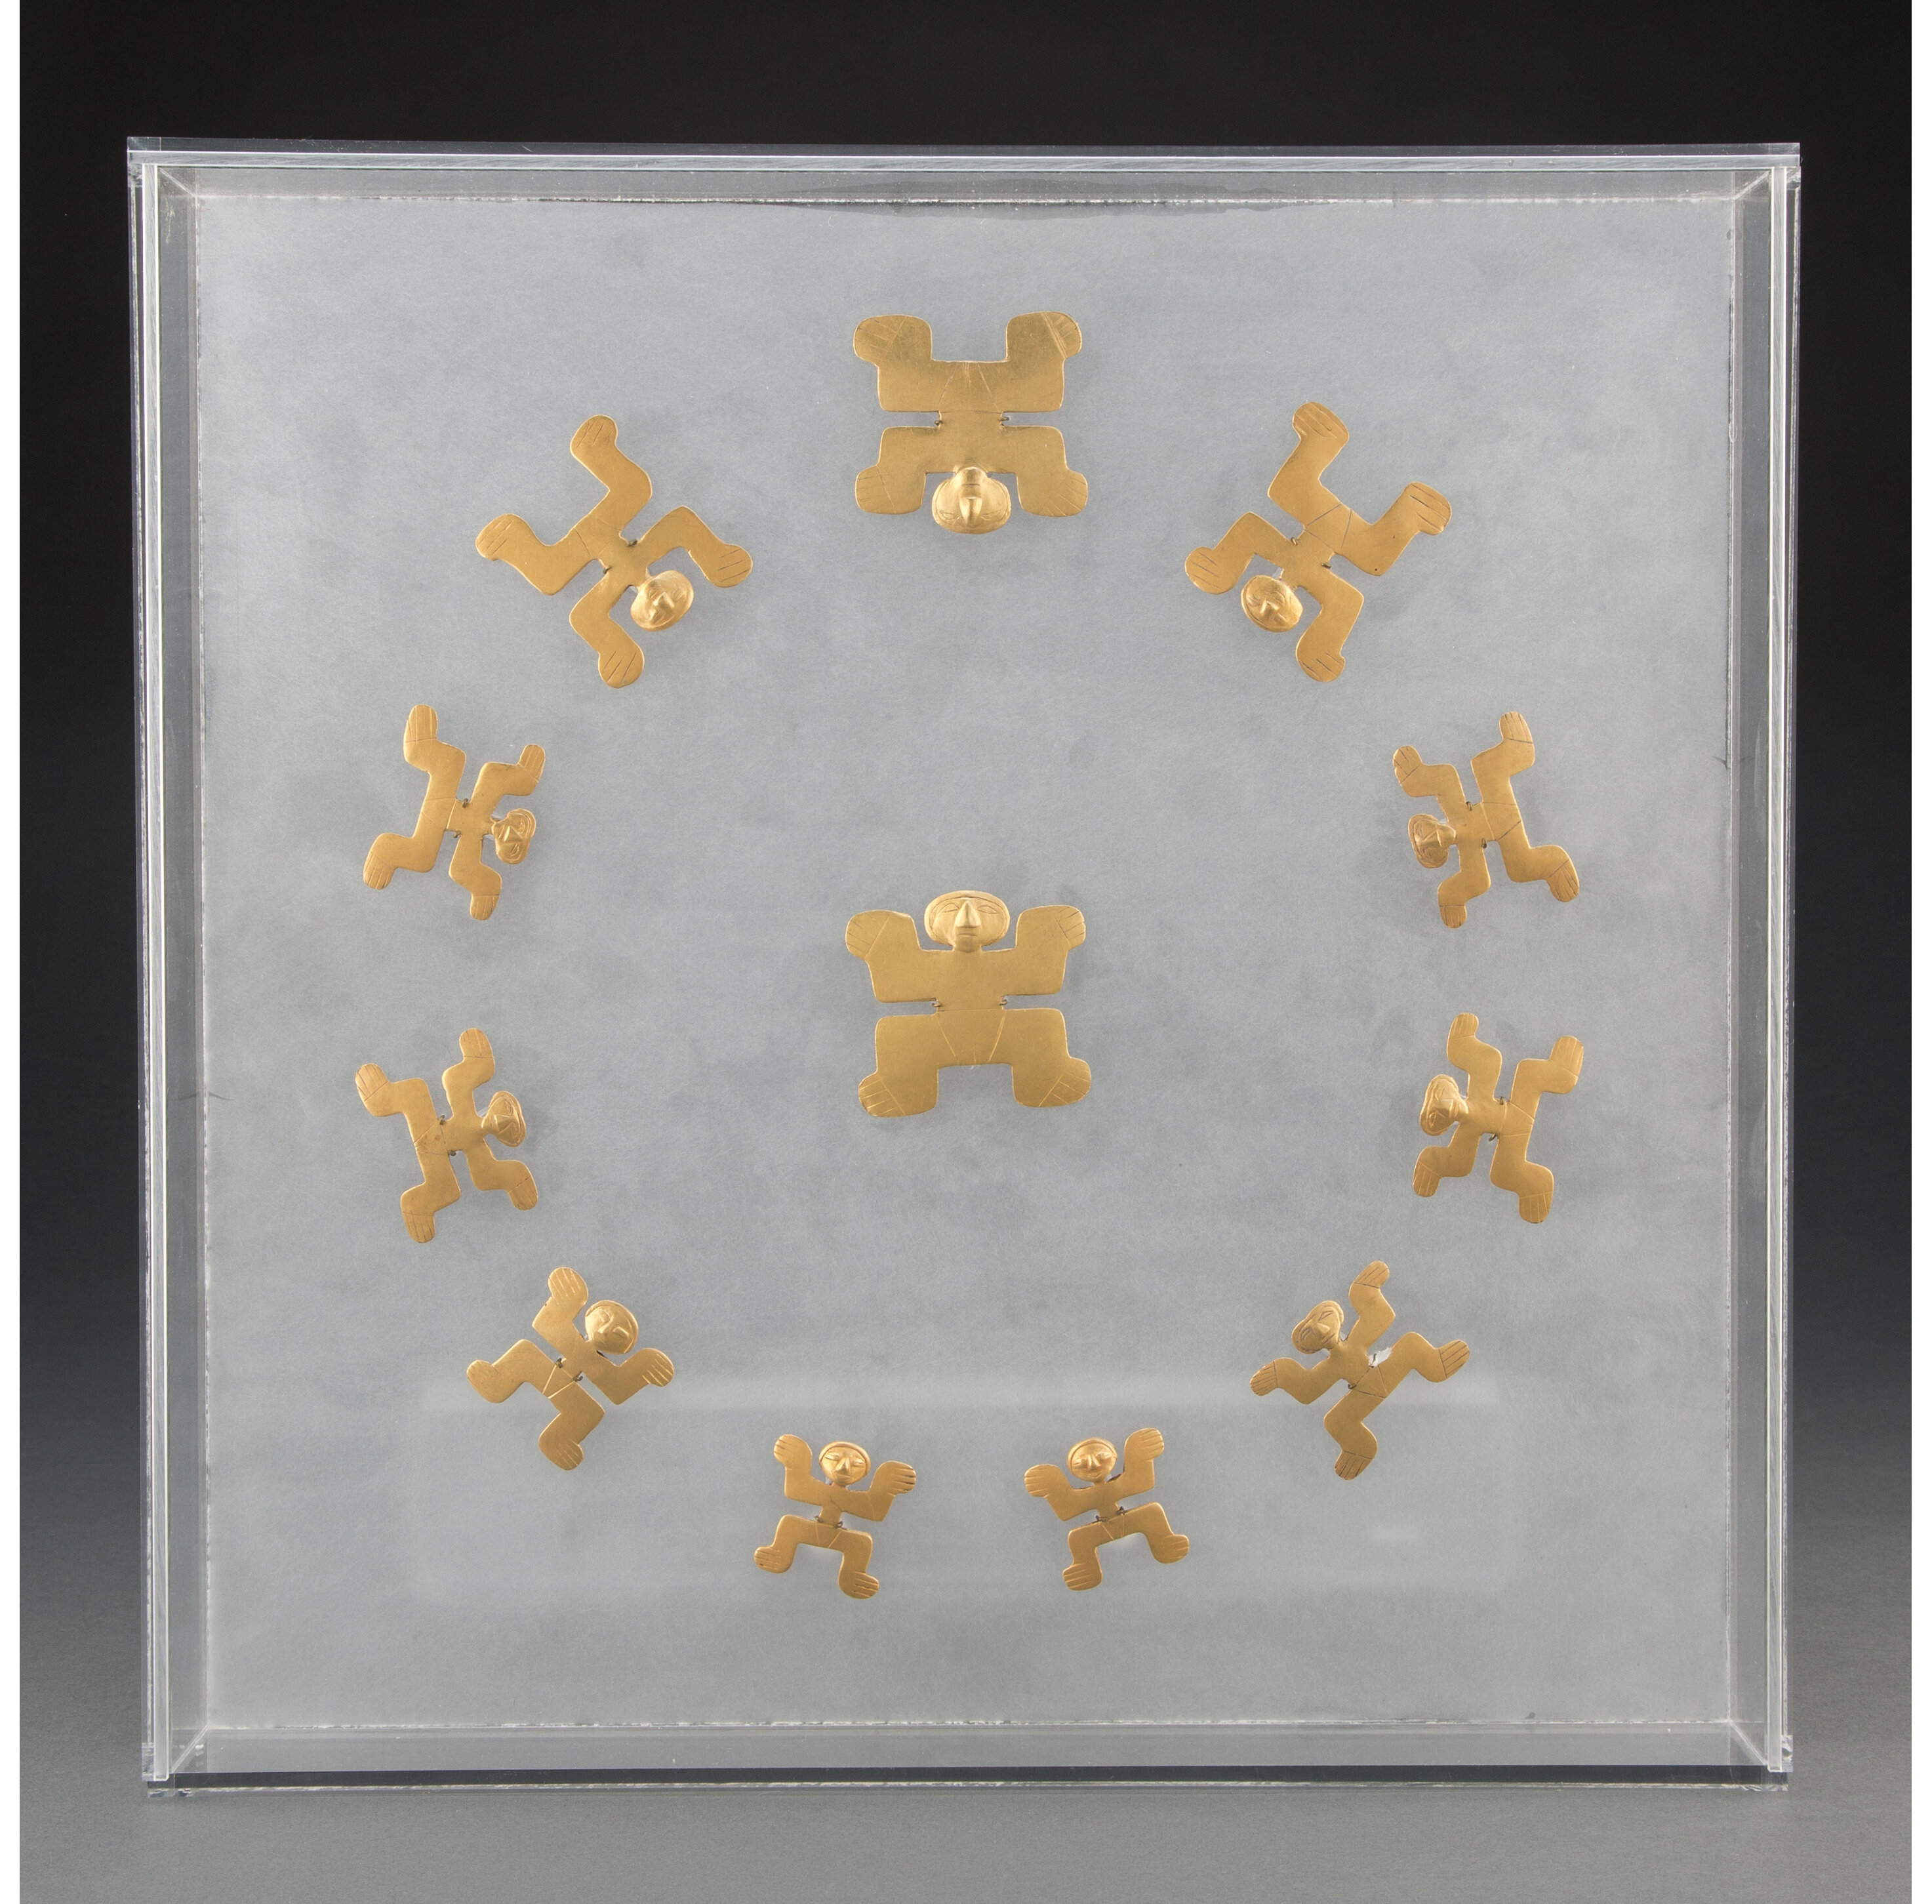 Set of 12 Tolima gold pendants, est. $30,000-$50,000. Image courtesy of Heritage Auctions